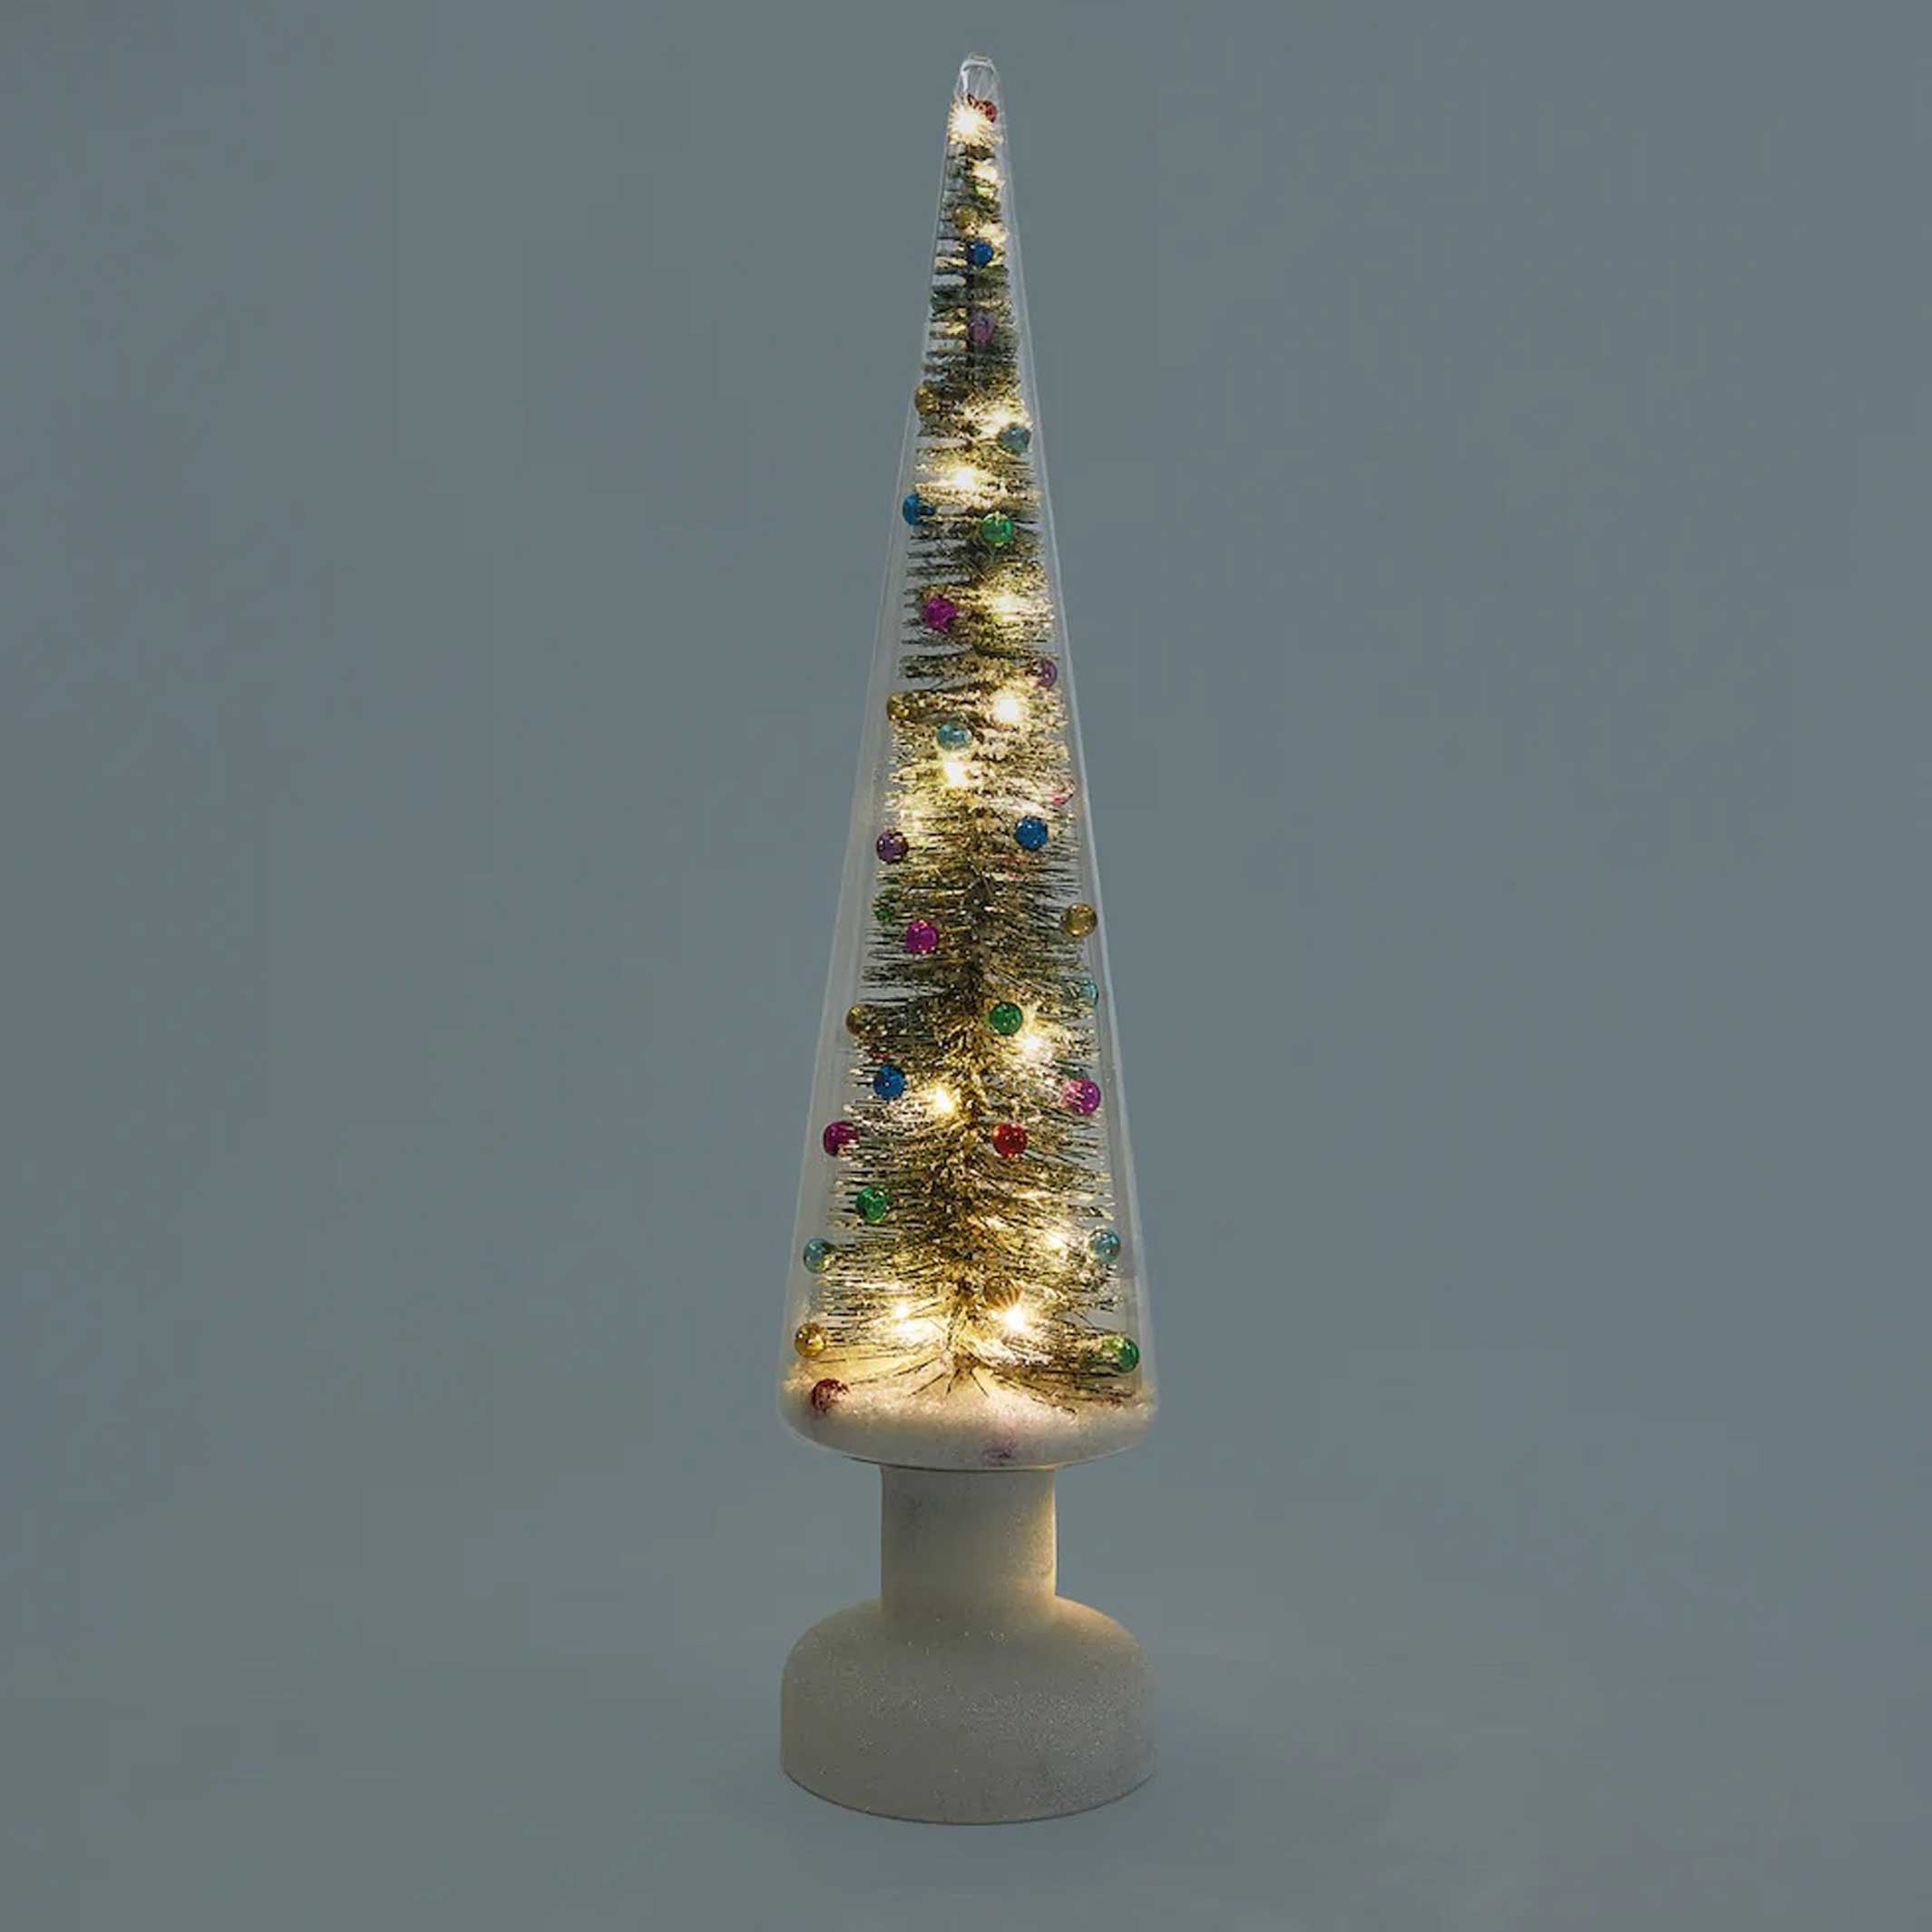 PAYS DES MERVEILLES ENNEIGÉES Grand | Grand FIRST TREE en verre avec éclairage LED | 56 cm de hauteur | MoMA